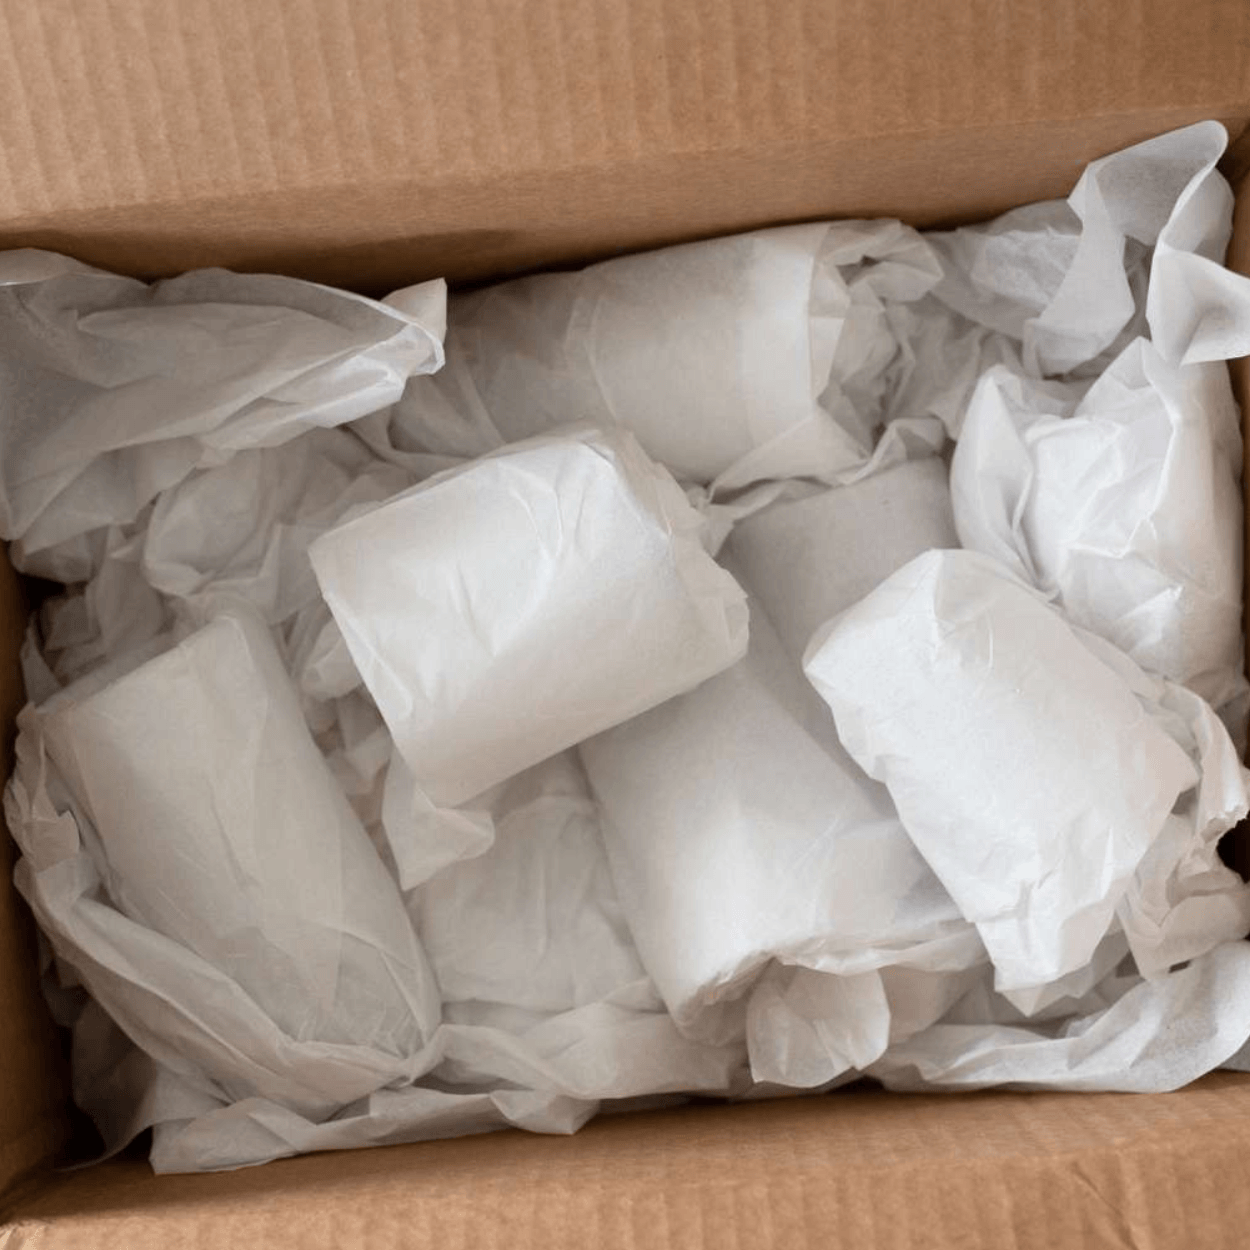 Bulk Tissue Paper Packs, White